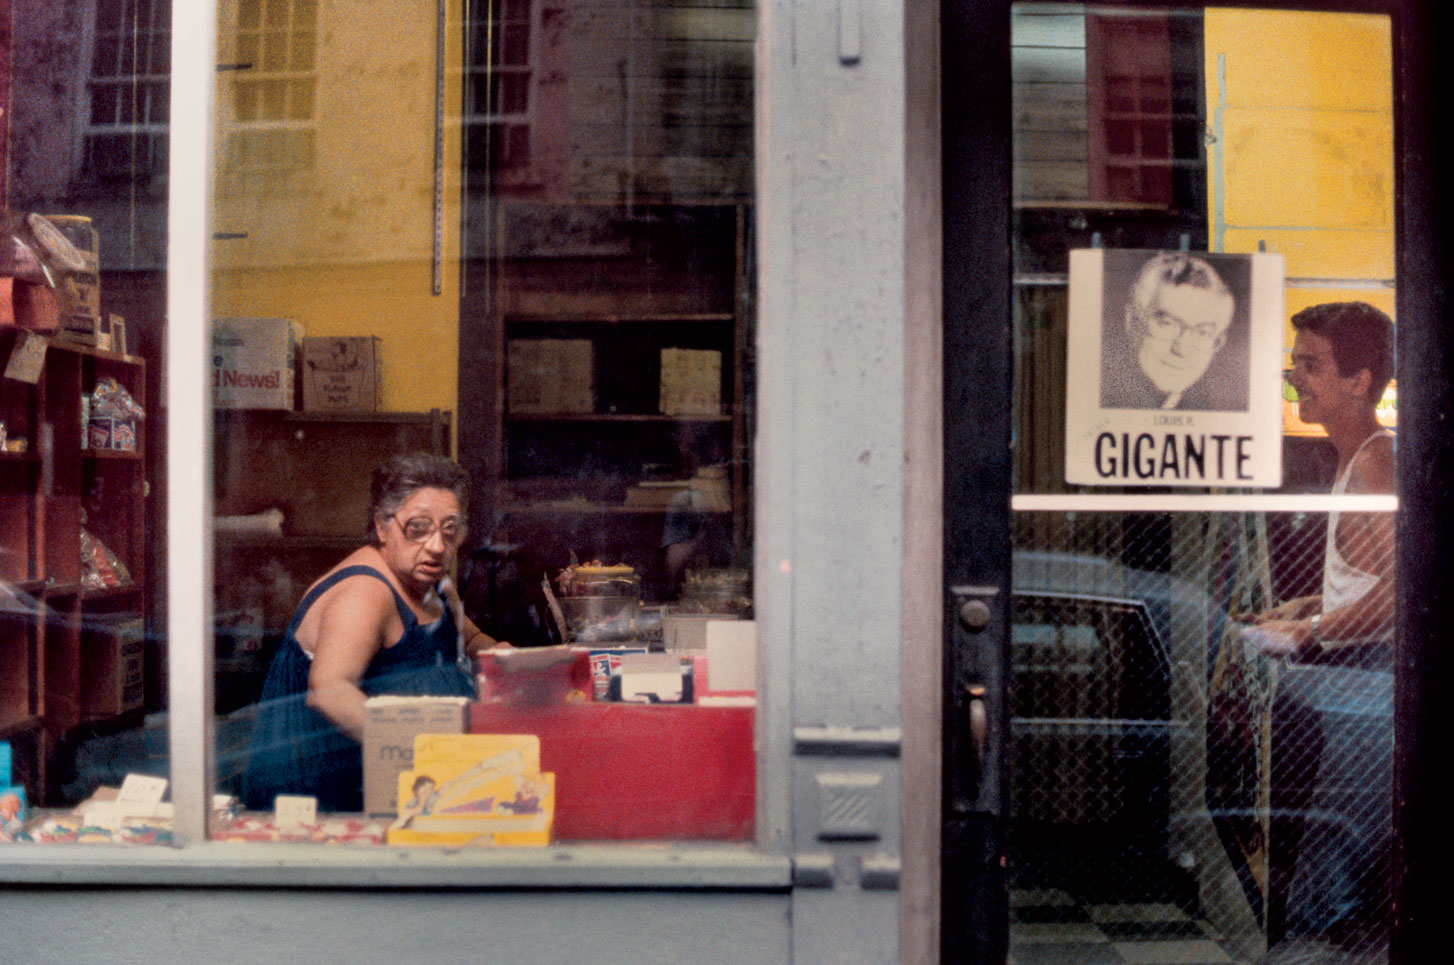 Gigante, New York, NY 1980